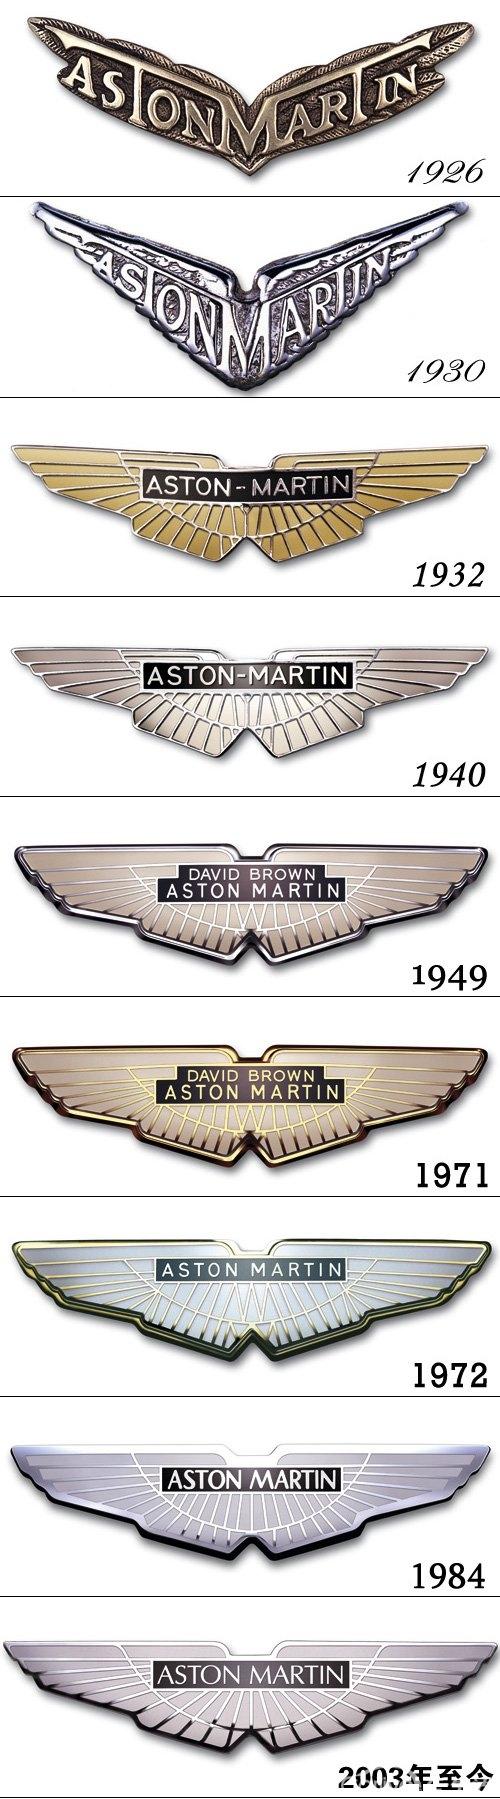 阿斯顿马丁车标的含义和演变过程